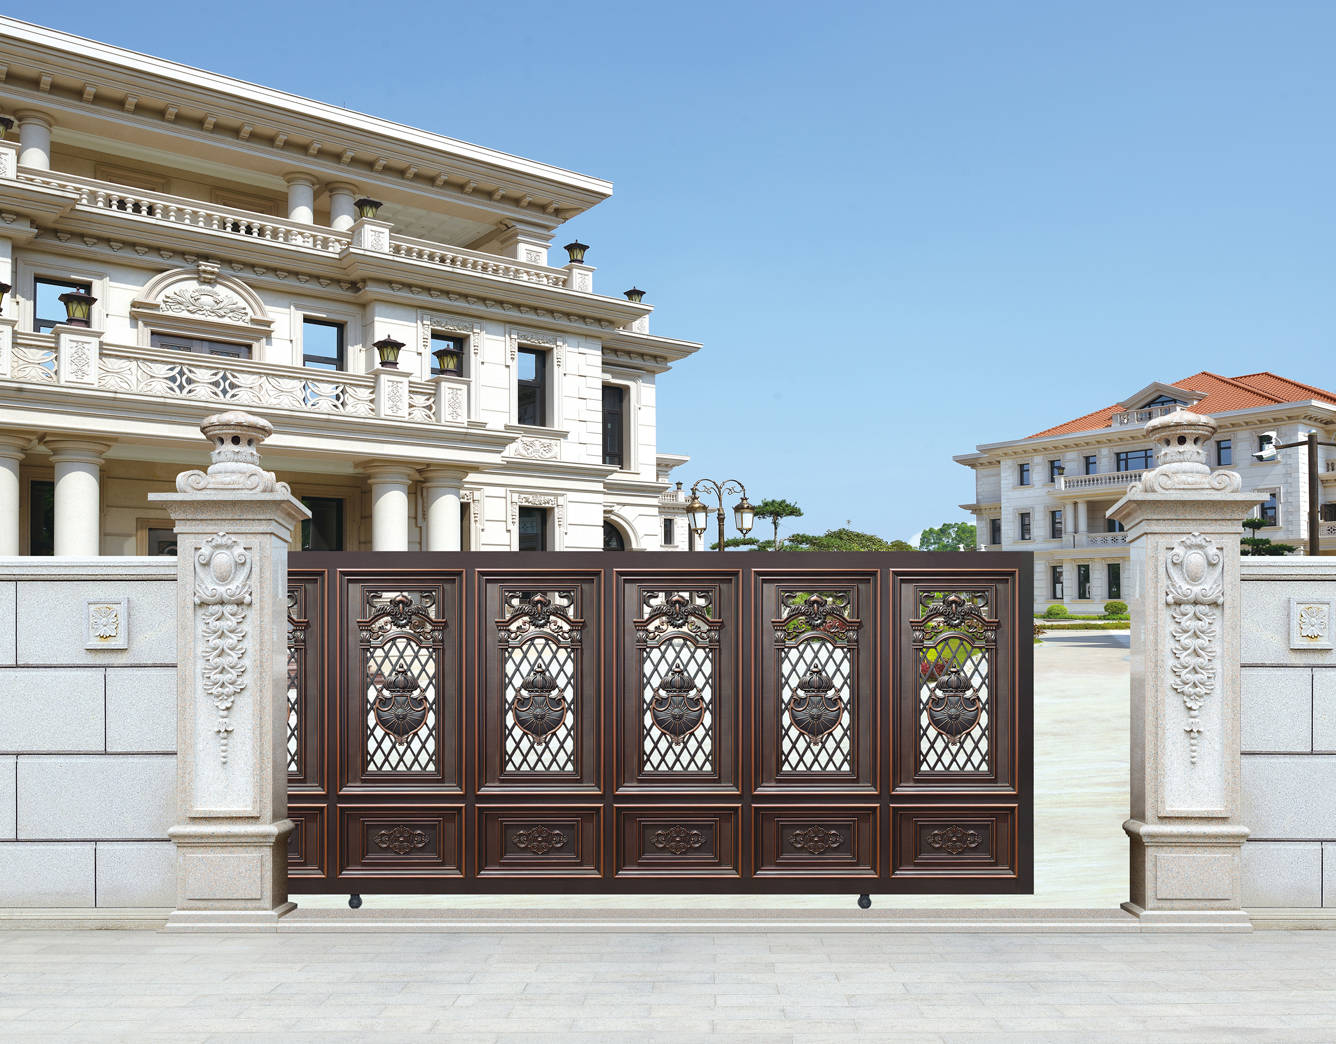 豪华庭院大门对别墅院子有什么规格要求?